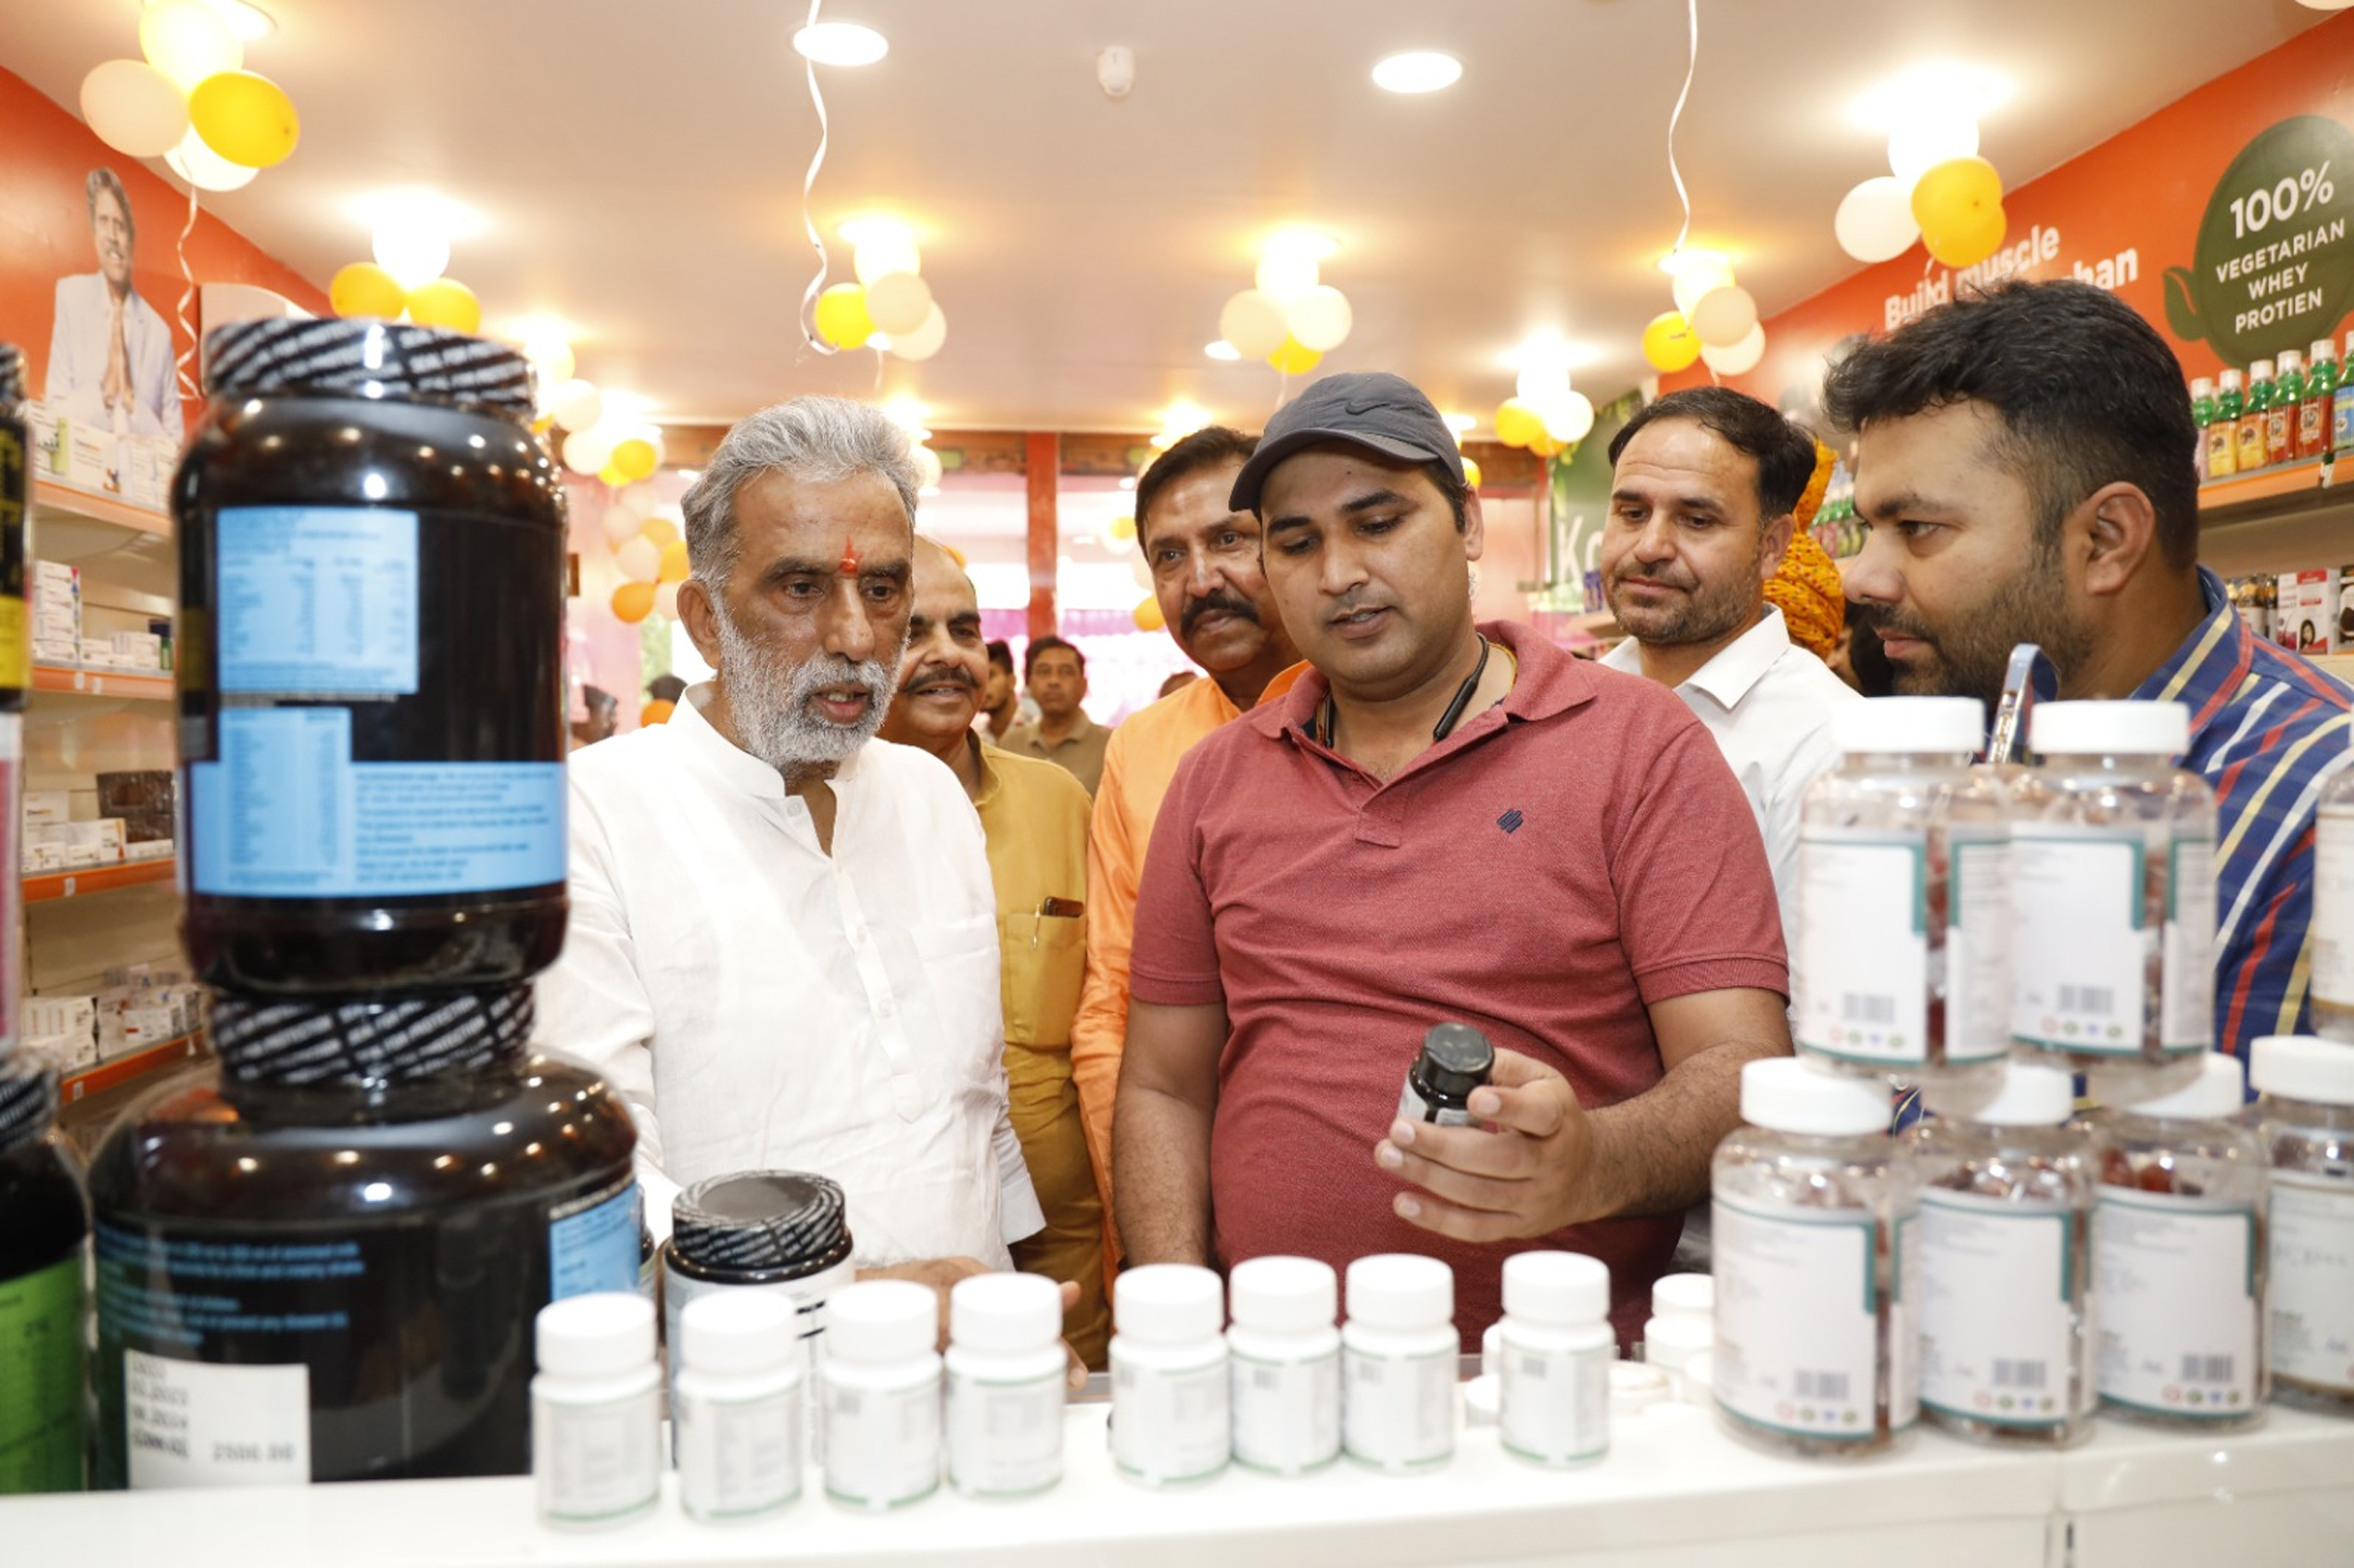 केंद्रीय राज्य मंत्री कृष्ण पाल गुर्जर ने किया जेनेरिक दवाइयों की दुकान का शुभारंभ